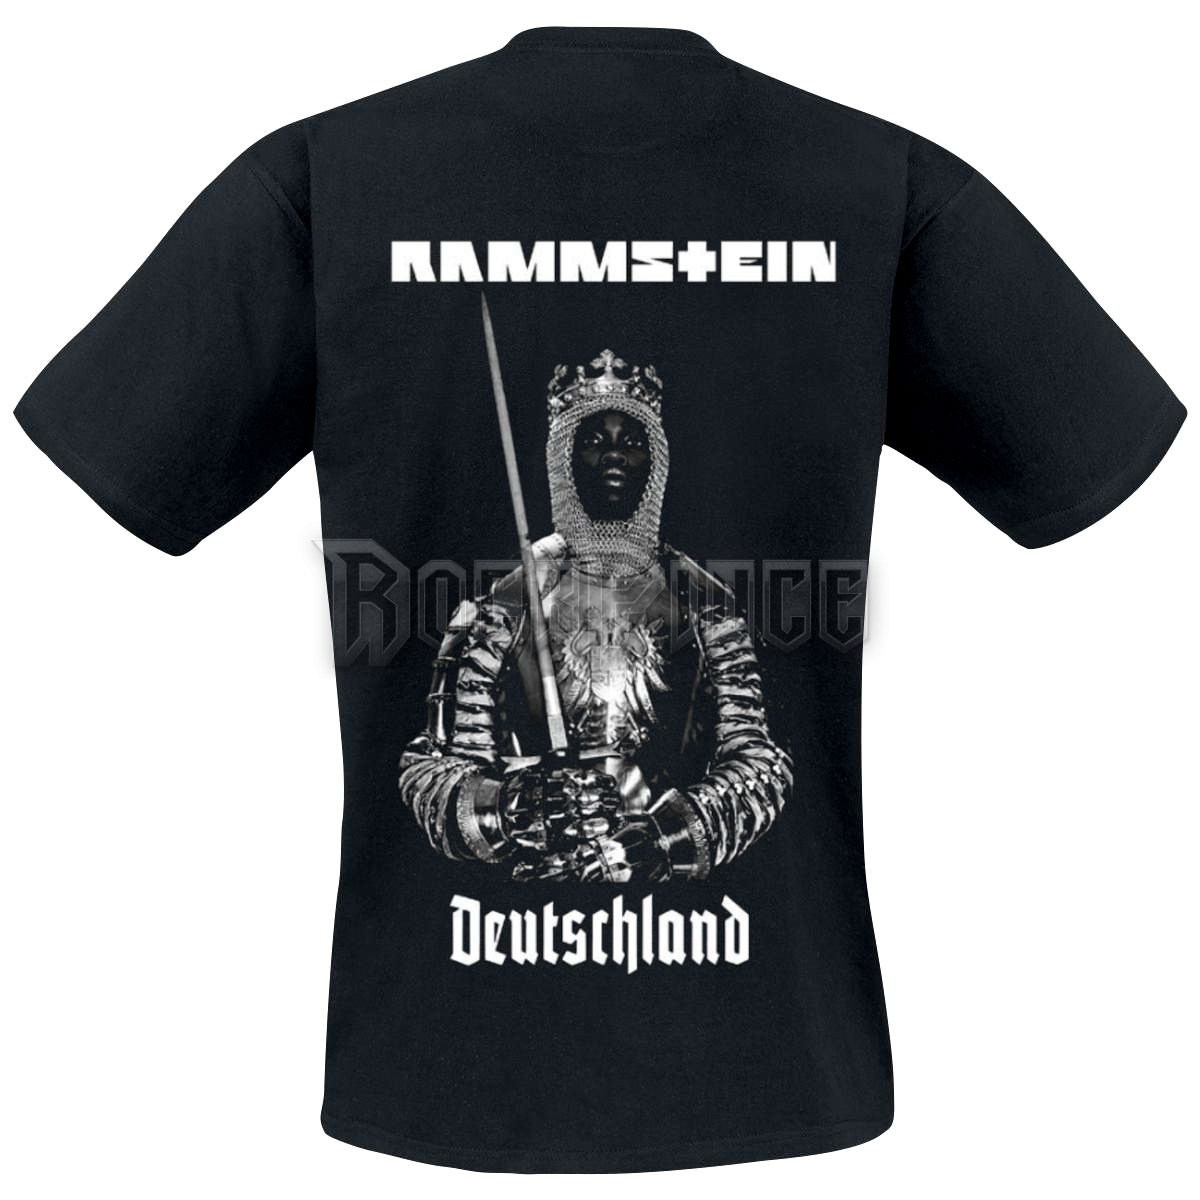 Rammstein - Deutschland - SS - 1475 - UNISEX PÓLÓ